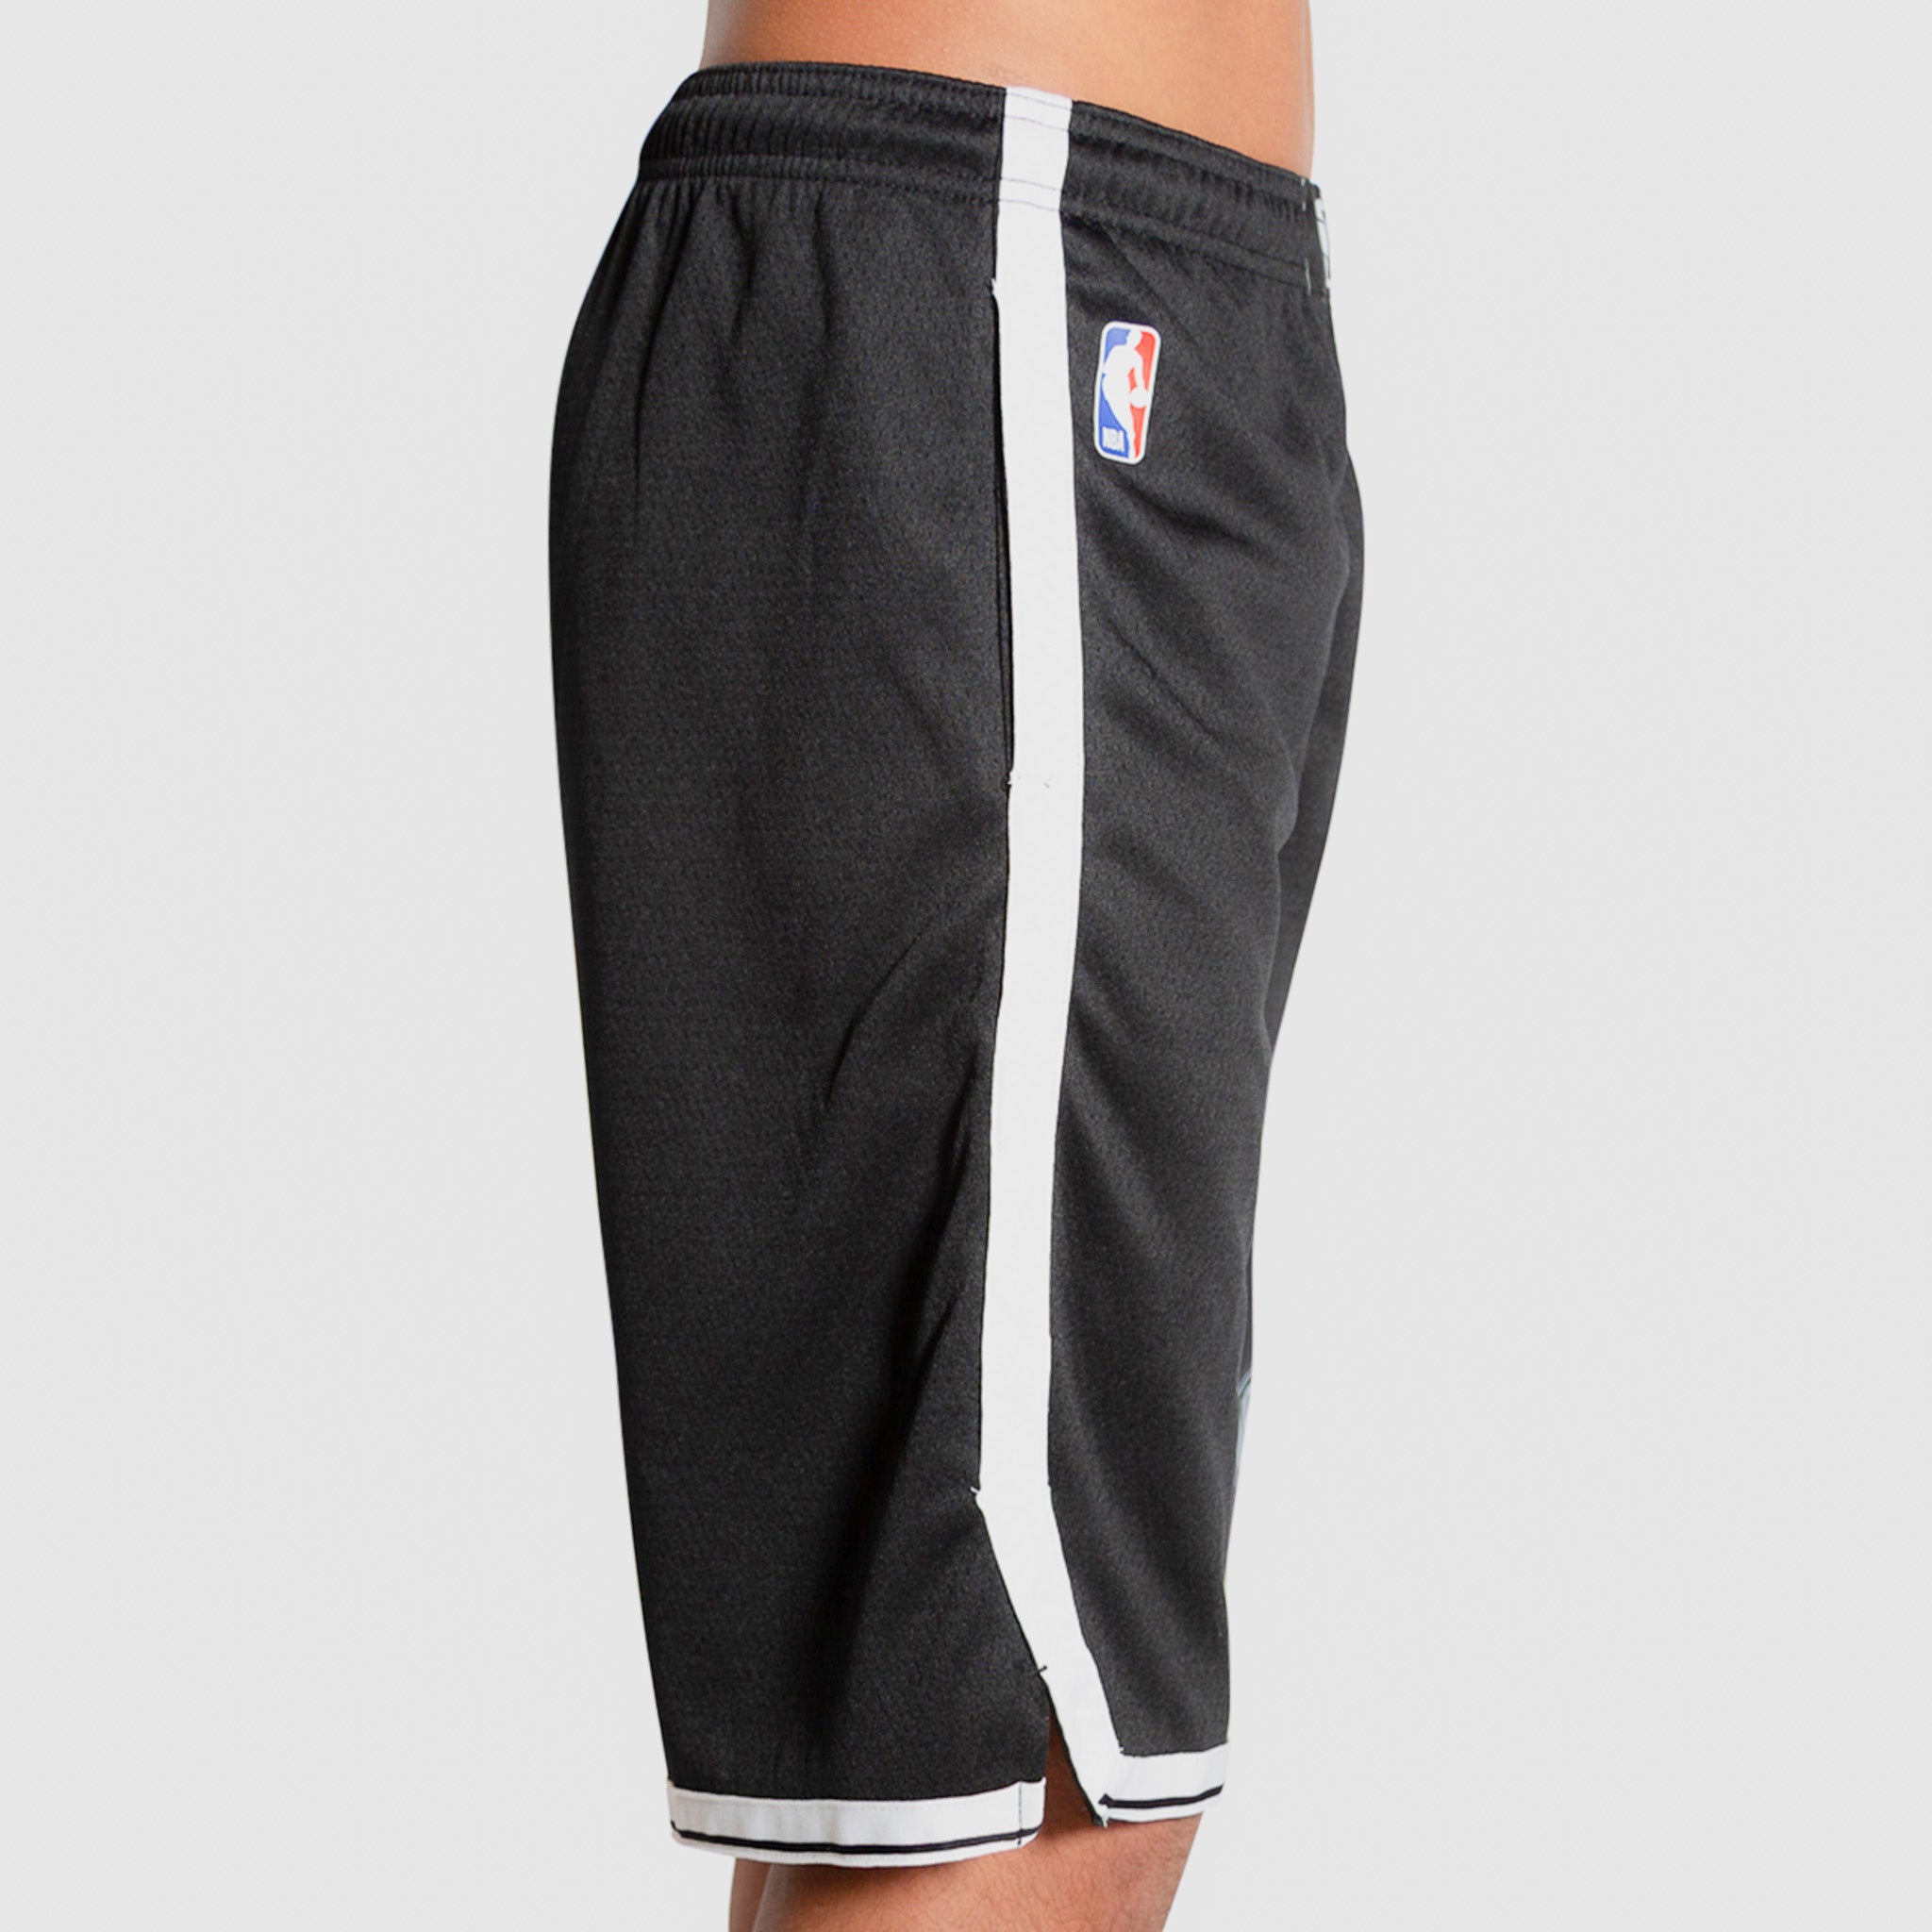 Nike NBA Brooklyn Nets Icon Edition Swingman Shorts Mens Sz Small  AJ5584-010